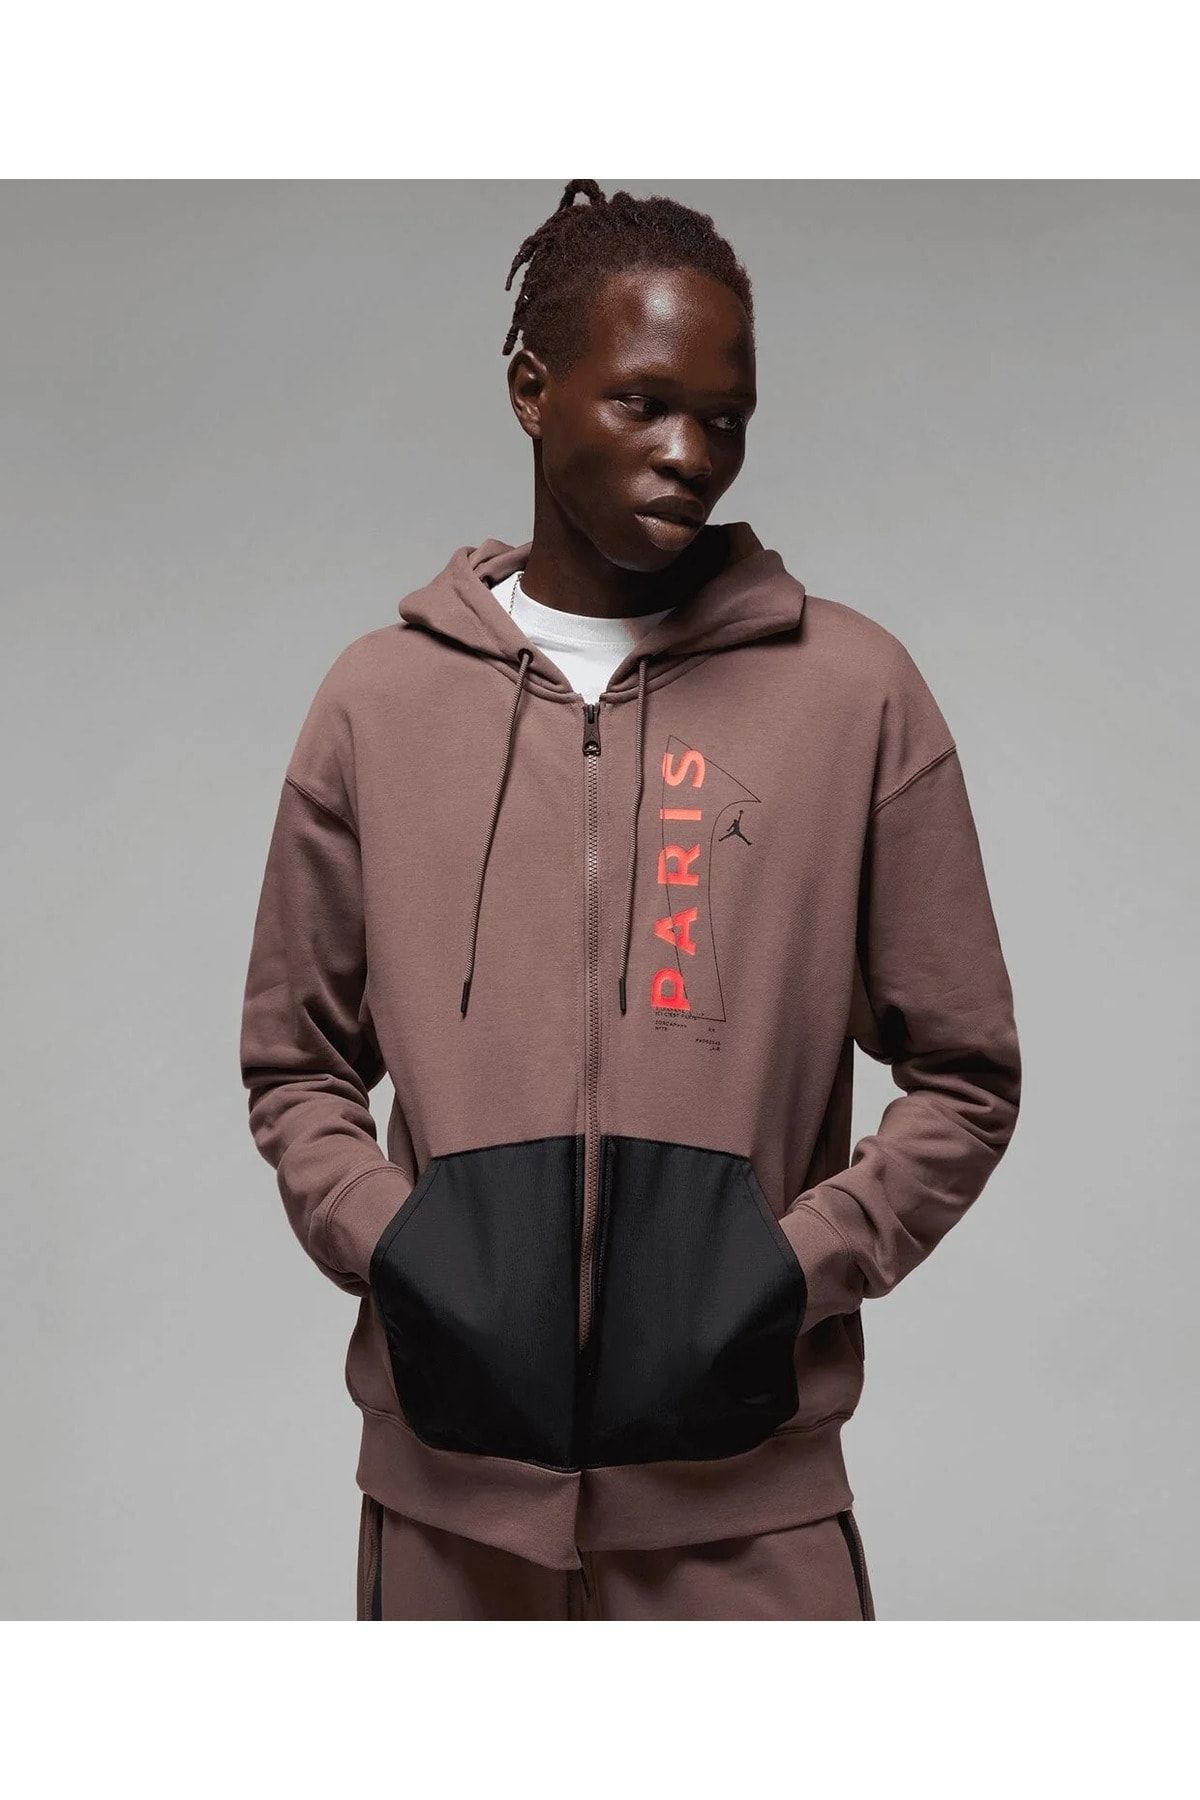 Nike Jordan Paris Saint Germain Erkek Sweatshirt